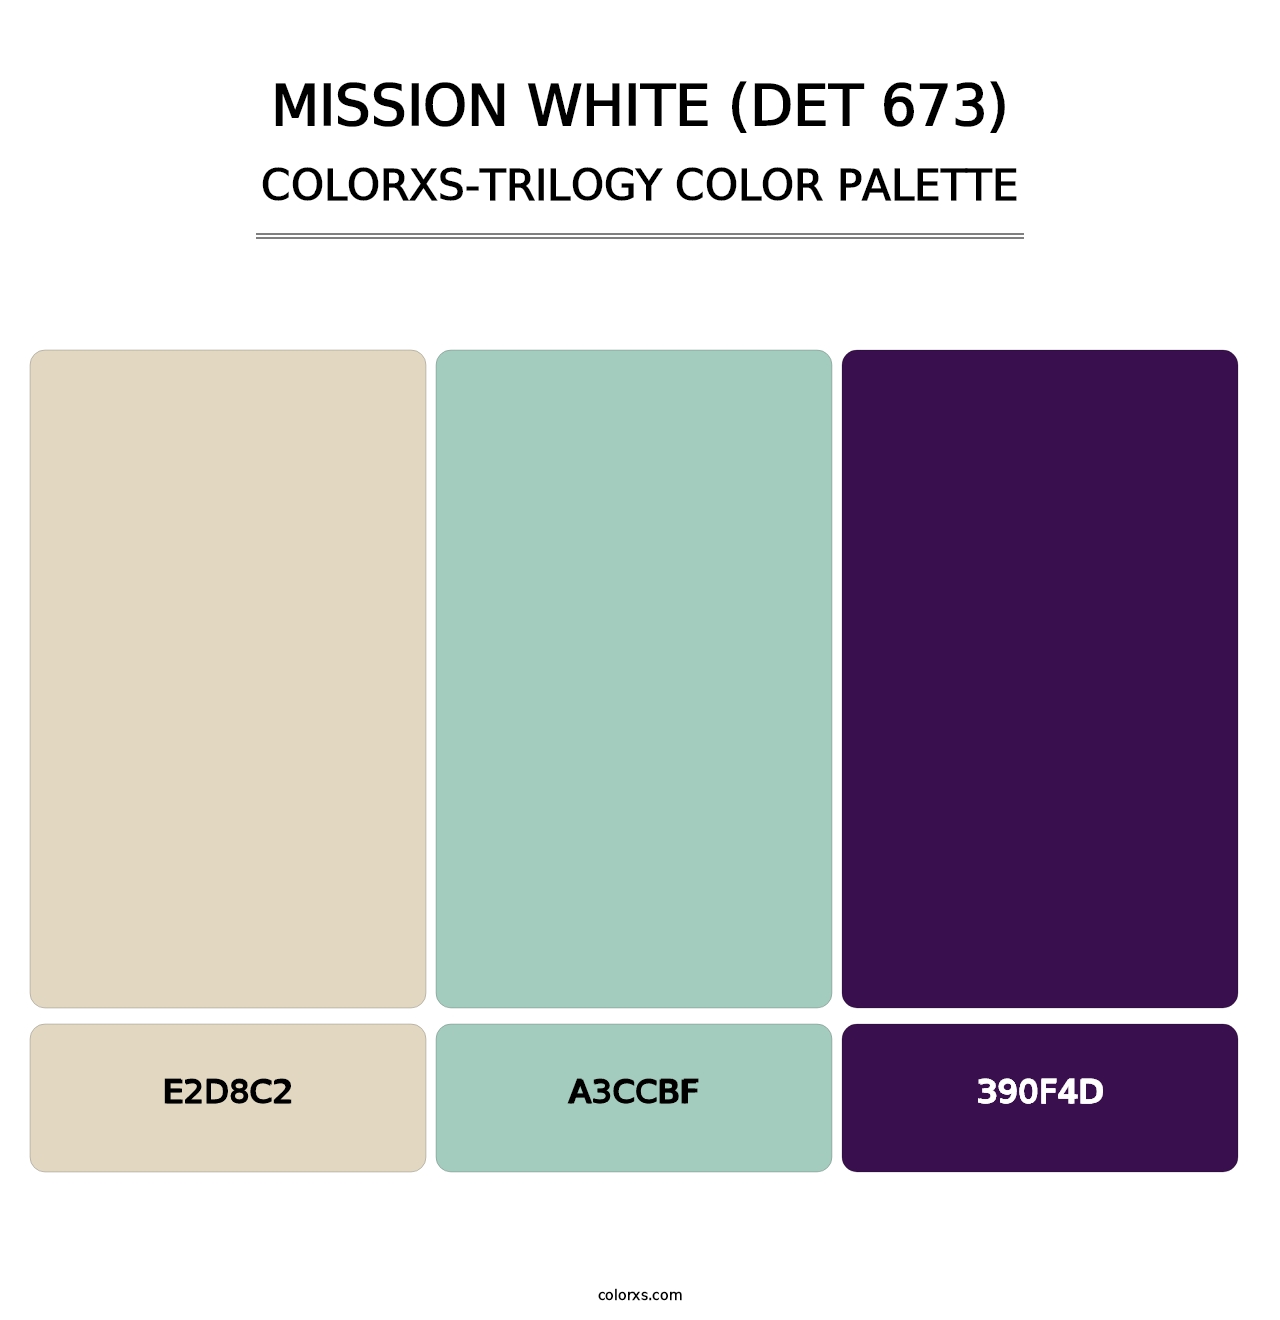 Mission White (DET 673) - Colorxs Trilogy Palette